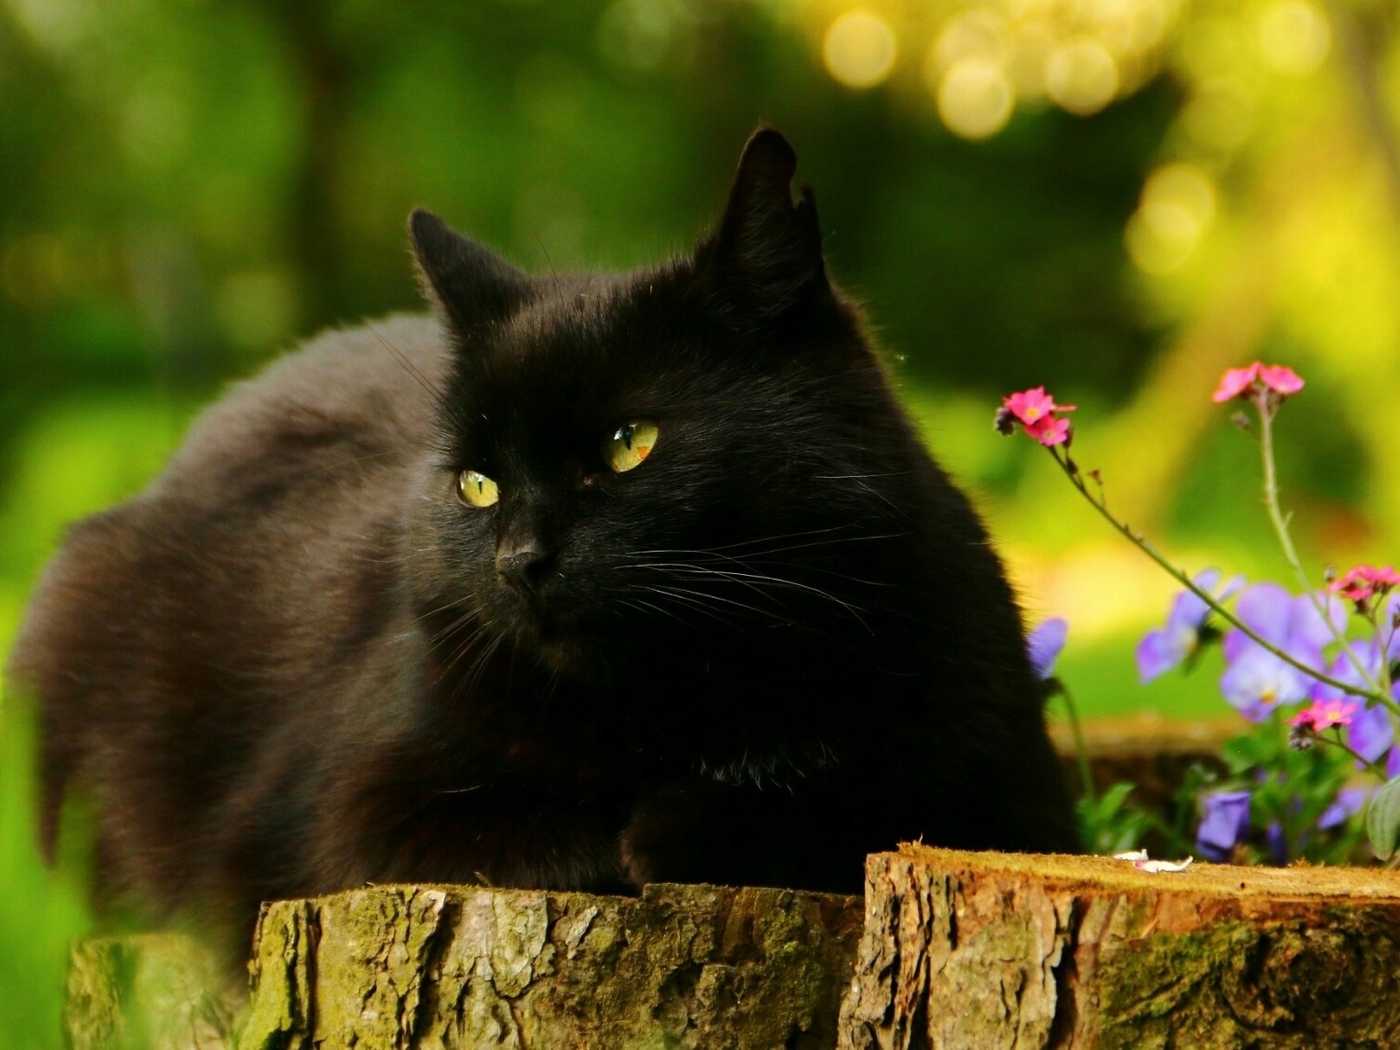 Картинка: Кот, кошка, чёрный, лежит, глаза, уши, пень, цветы, лето, день, солнечный, размытость